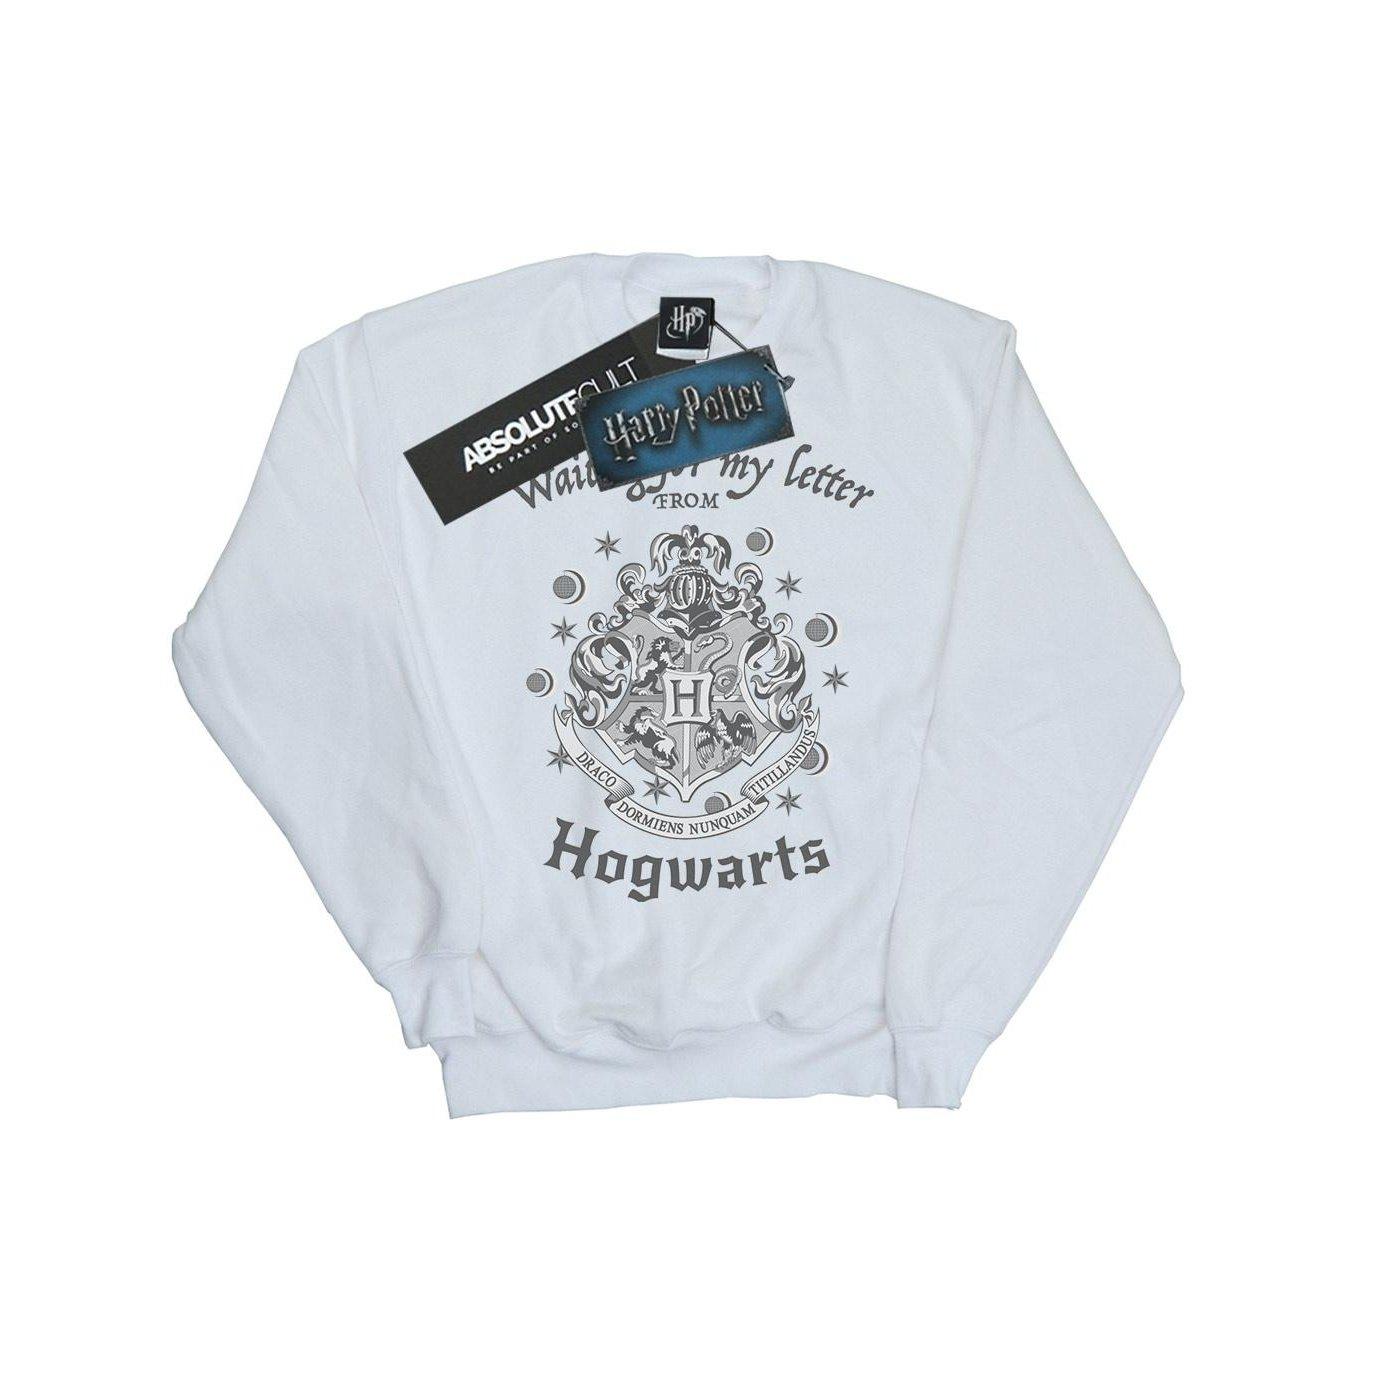 Hogwarts Waiting For My Letter Sweatshirt Unisex Weiss 116 von Harry Potter